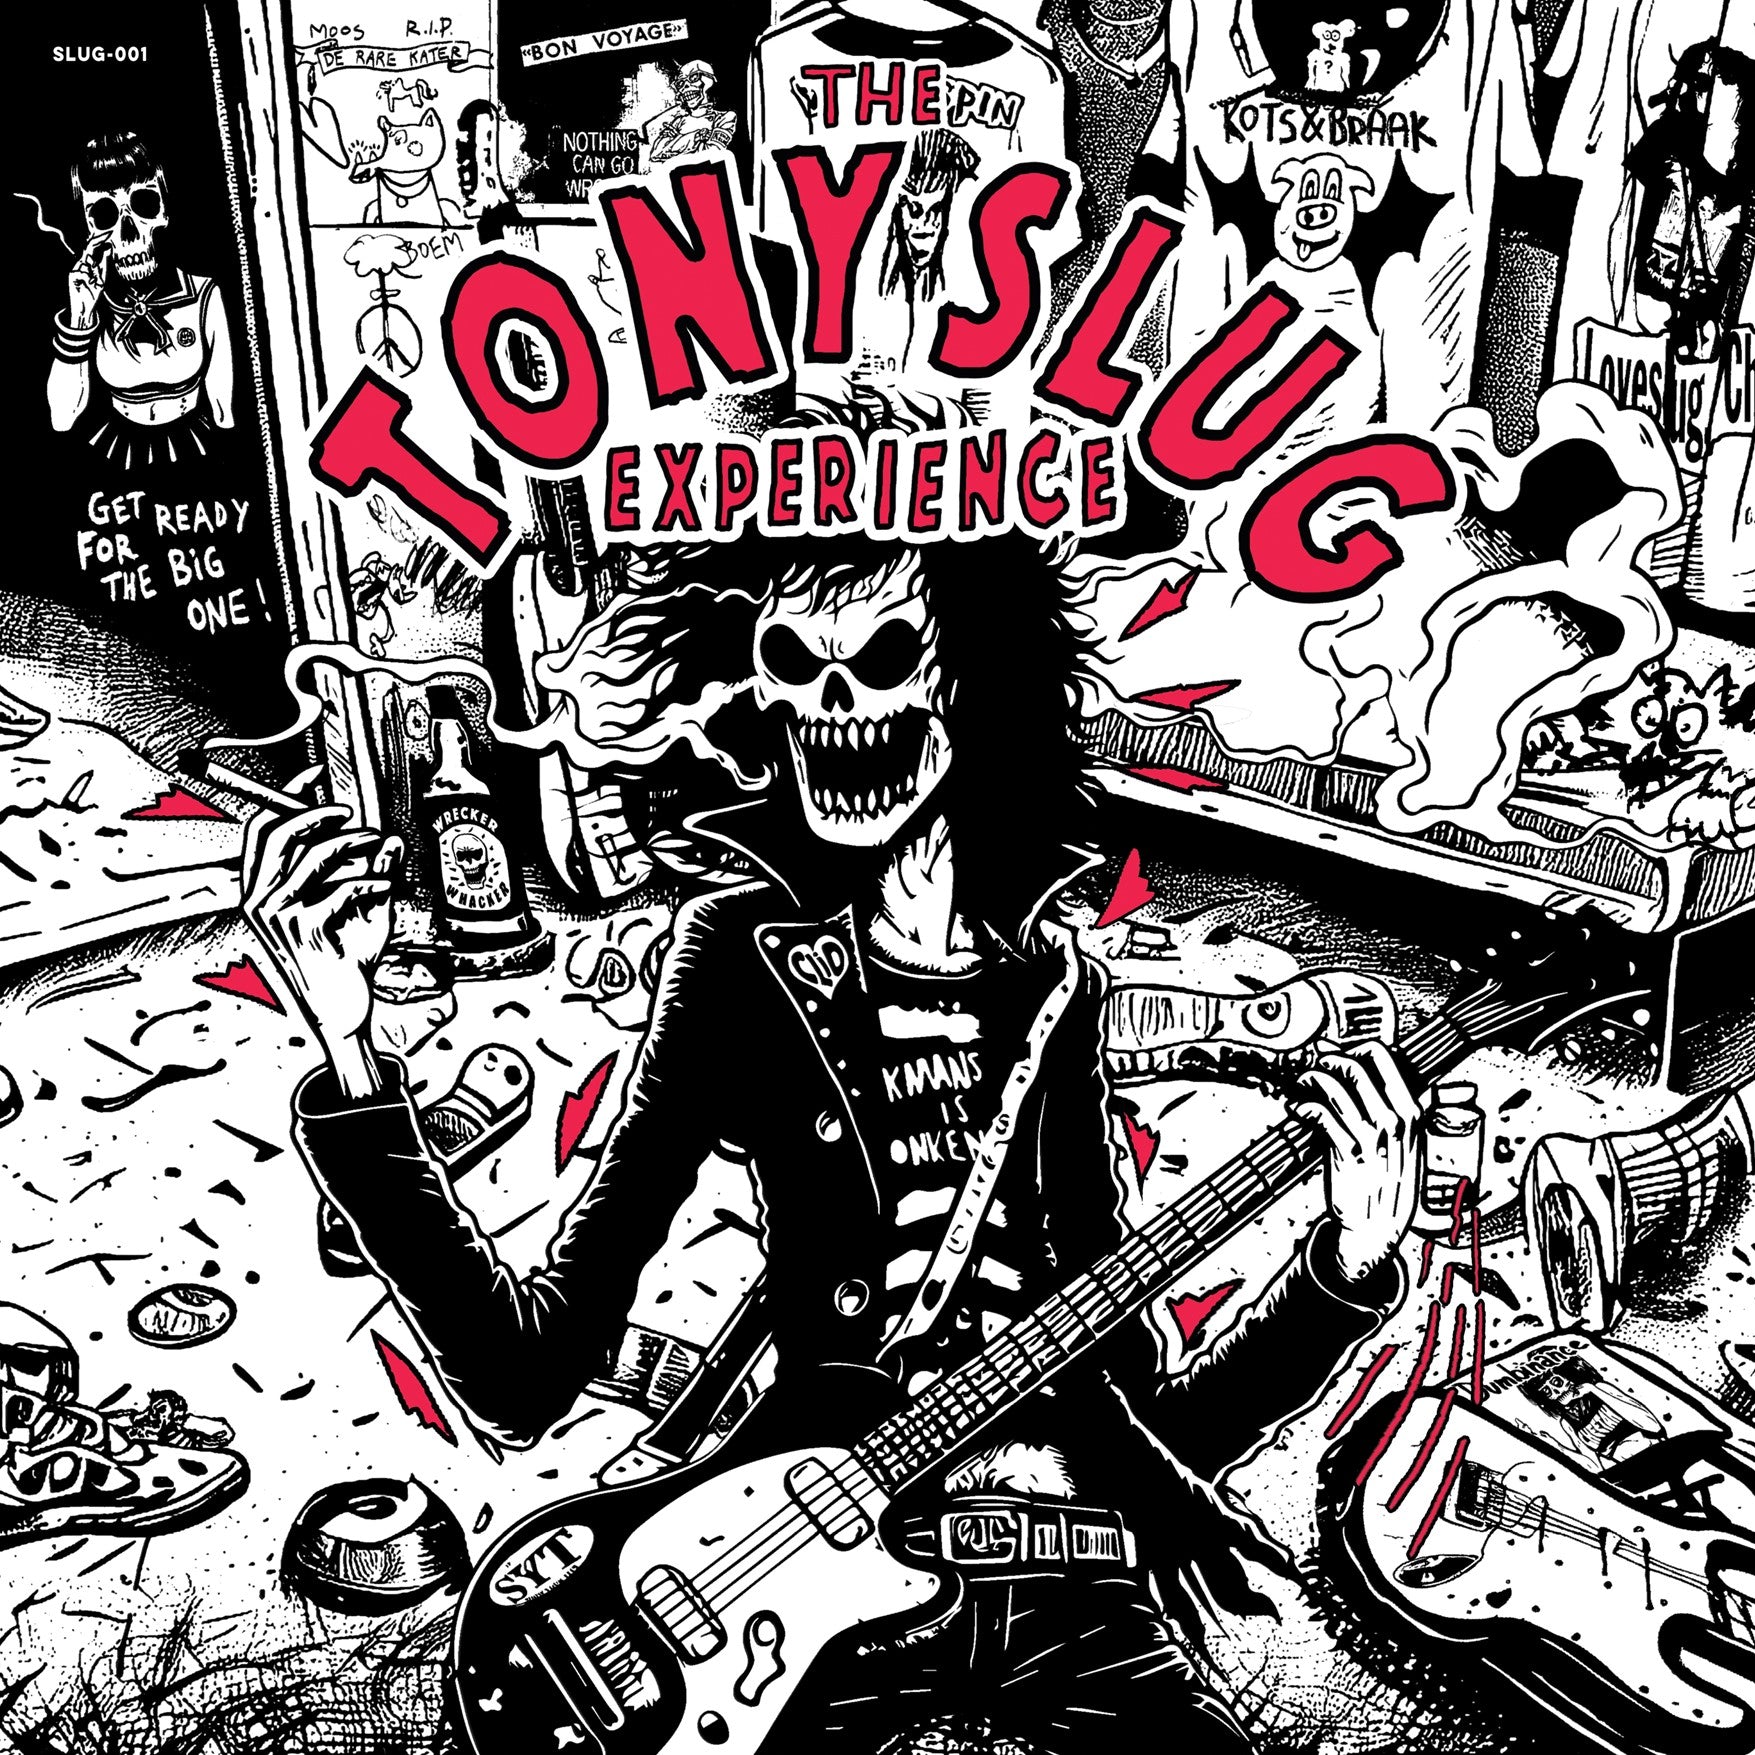 v518 - Tony Slug - The Tony Slug Experience